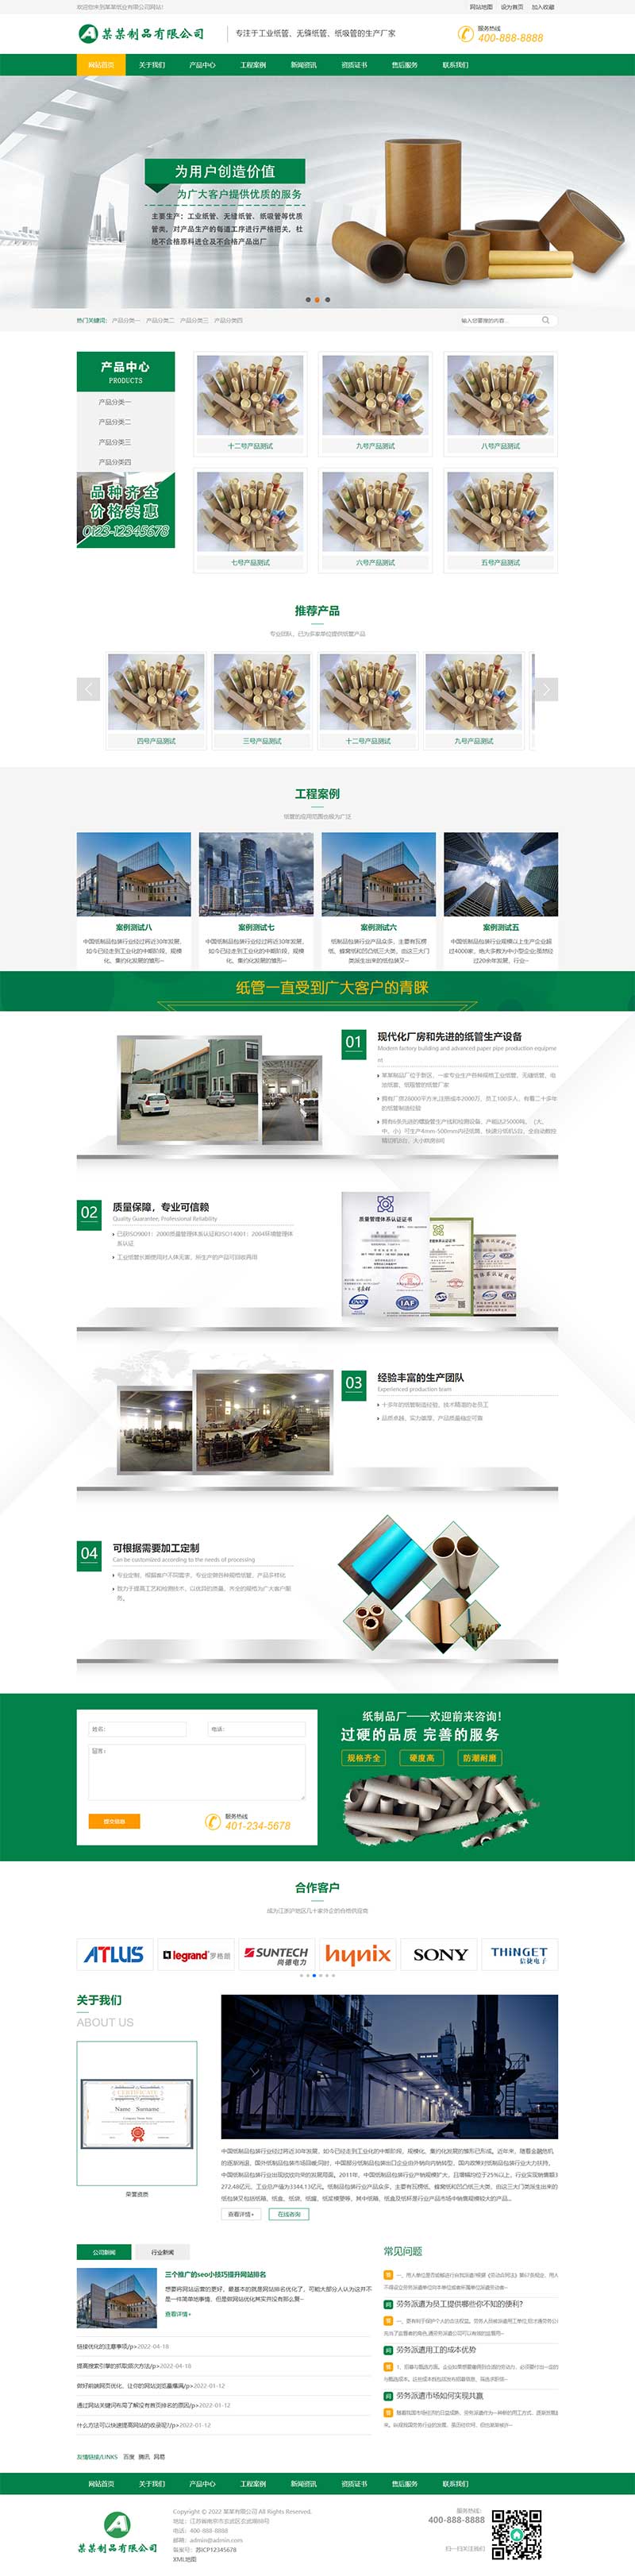 绿色营销型工业纸管纸业制造通用企业网站Wordpress模板效果图